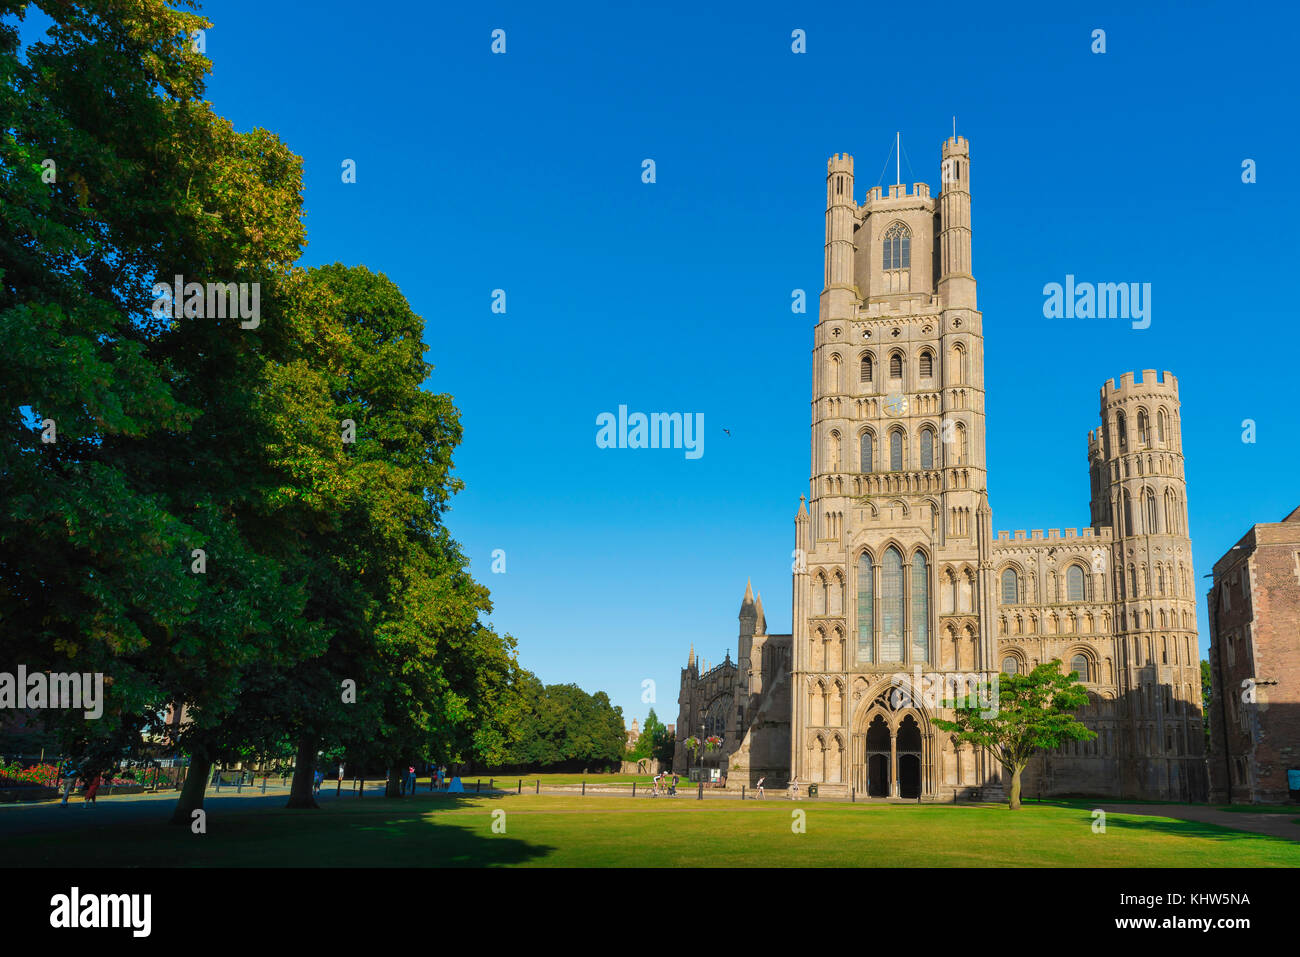 La ville de la cathédrale britannique, le vert de la cathédrale - connu sous le nom de Palace Green - et la tour ouest de la cathédrale à Ely, Cambridgeshire, Royaume-Uni. Banque D'Images